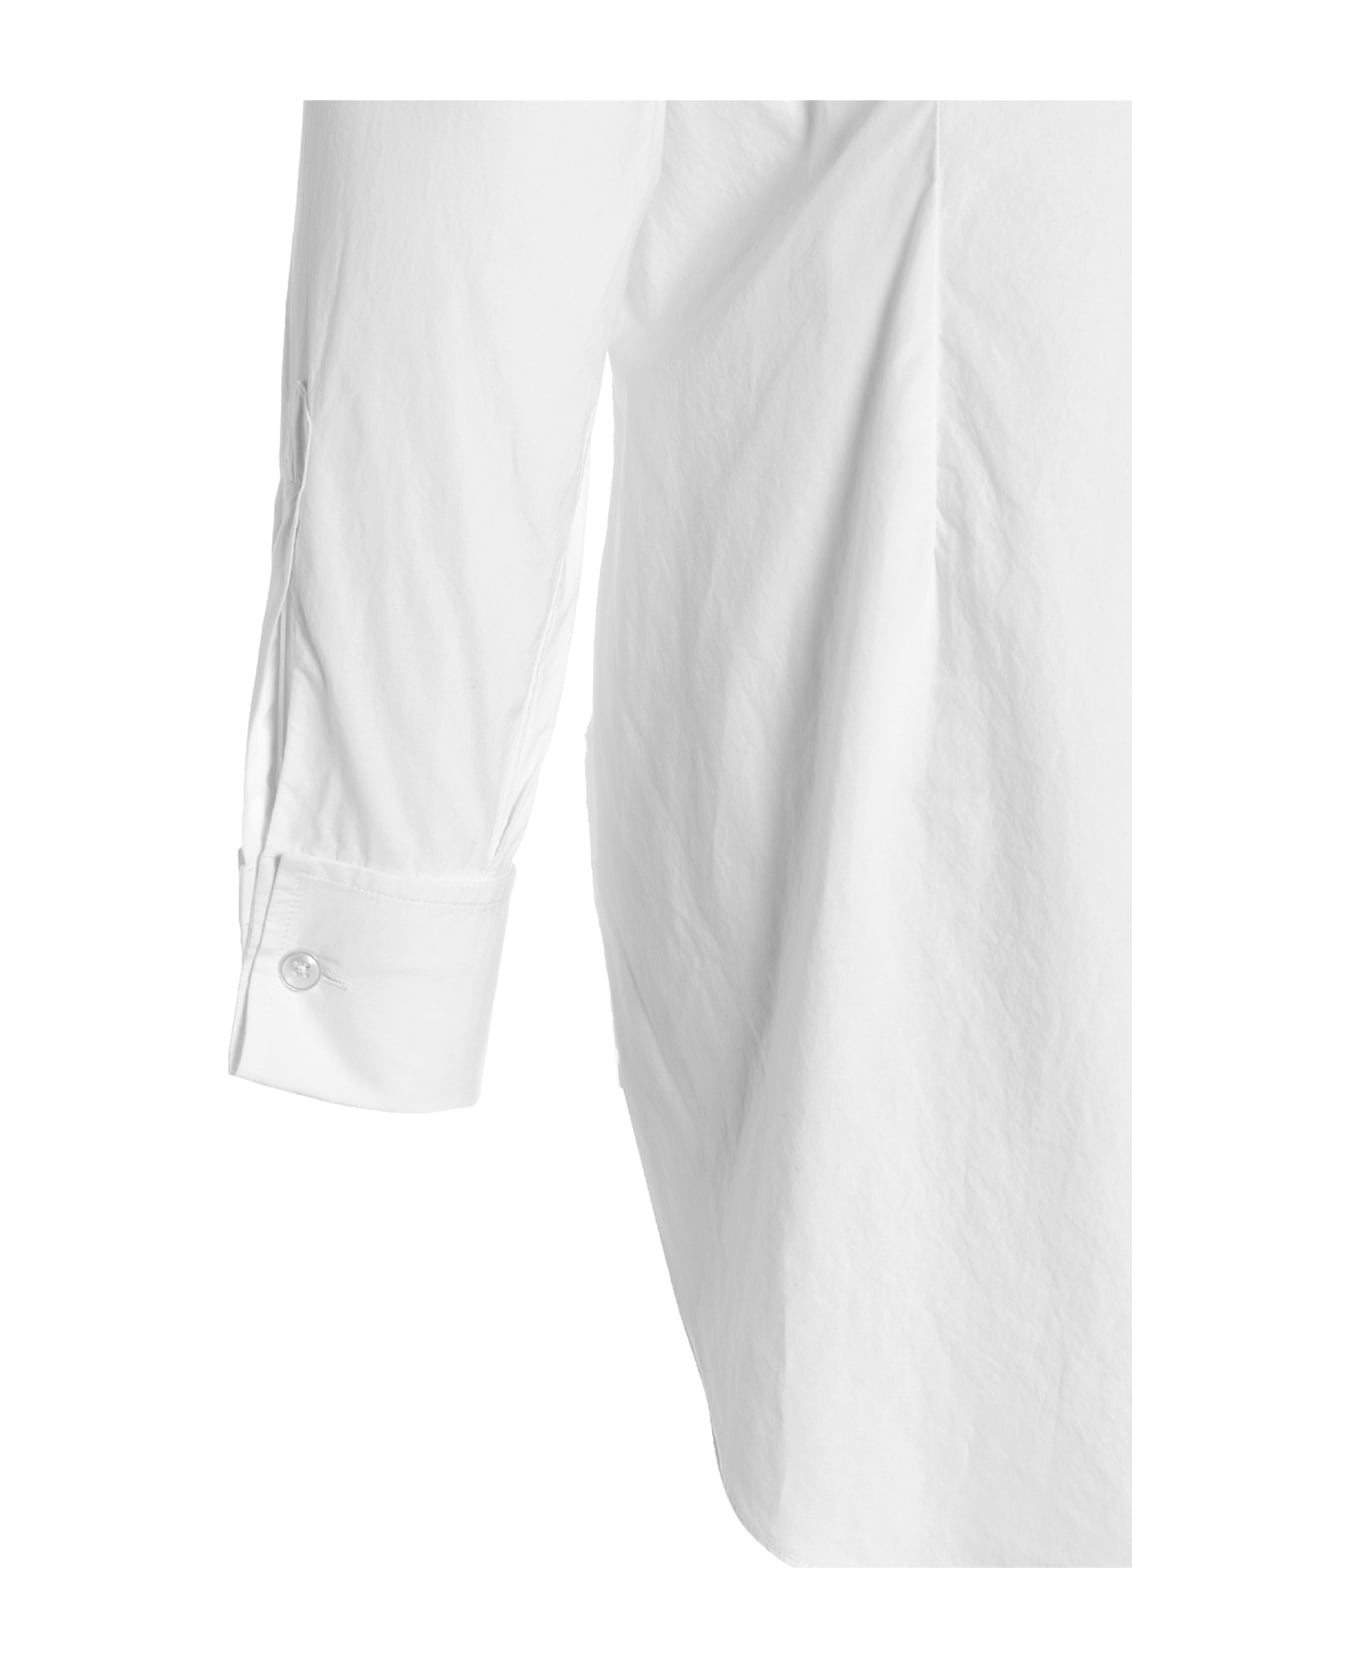 Maison Margiela Cotton Shirt - White シャツ